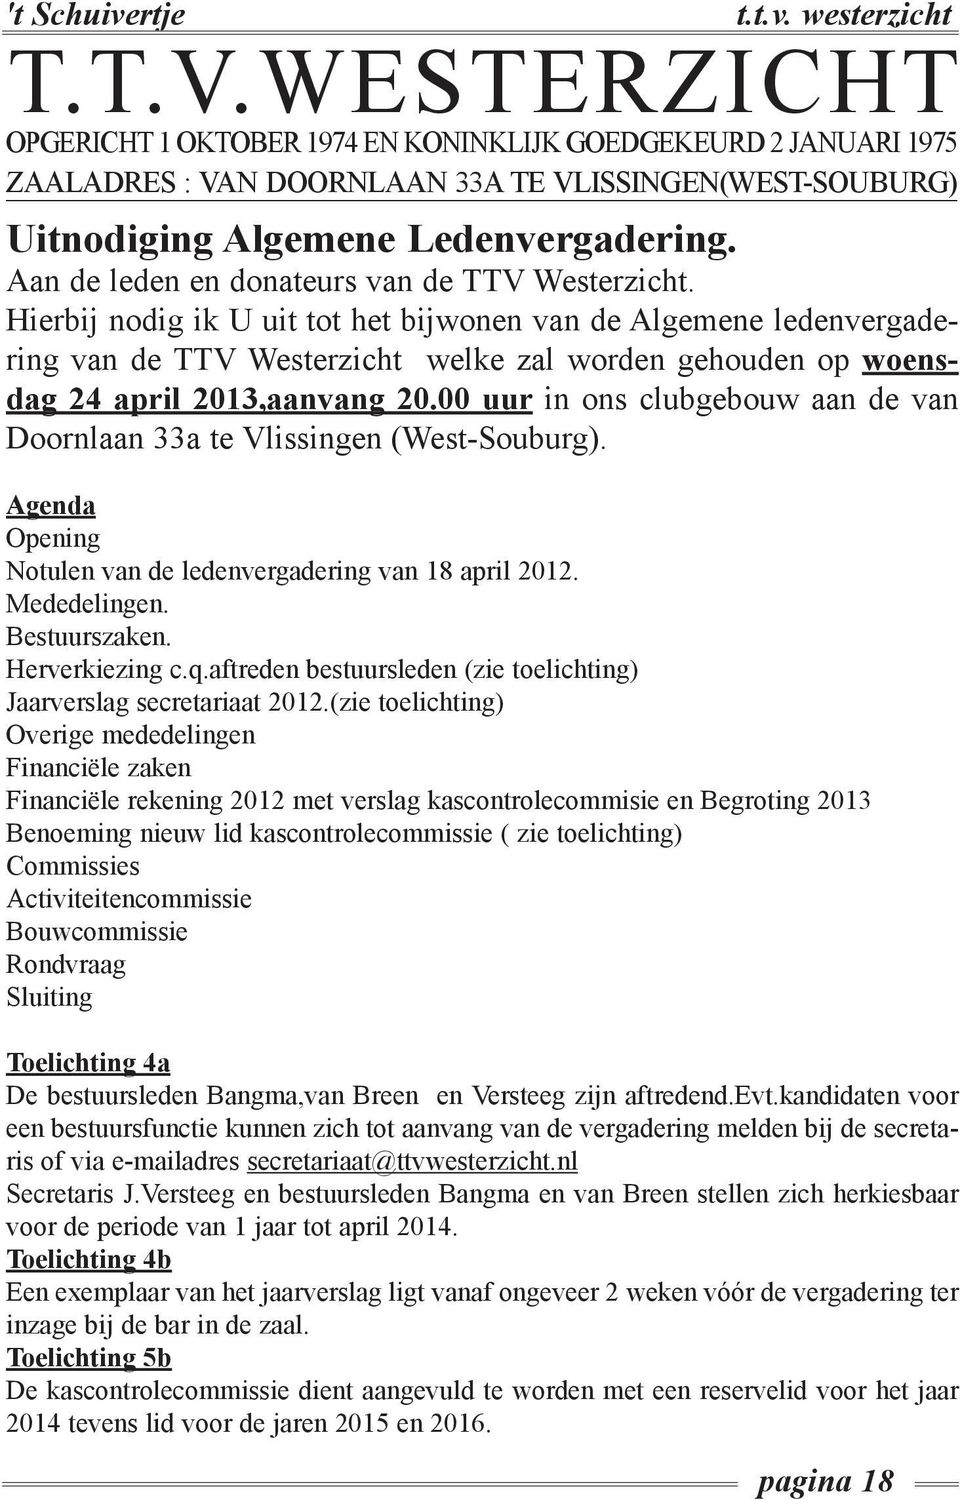 Hierbij nodig ik U uit tot het bijwonen van de Algemene ledenvergadering van de TTV Westerzicht welke zal worden gehouden op woensdag 24 april 2013,aanvang 20.